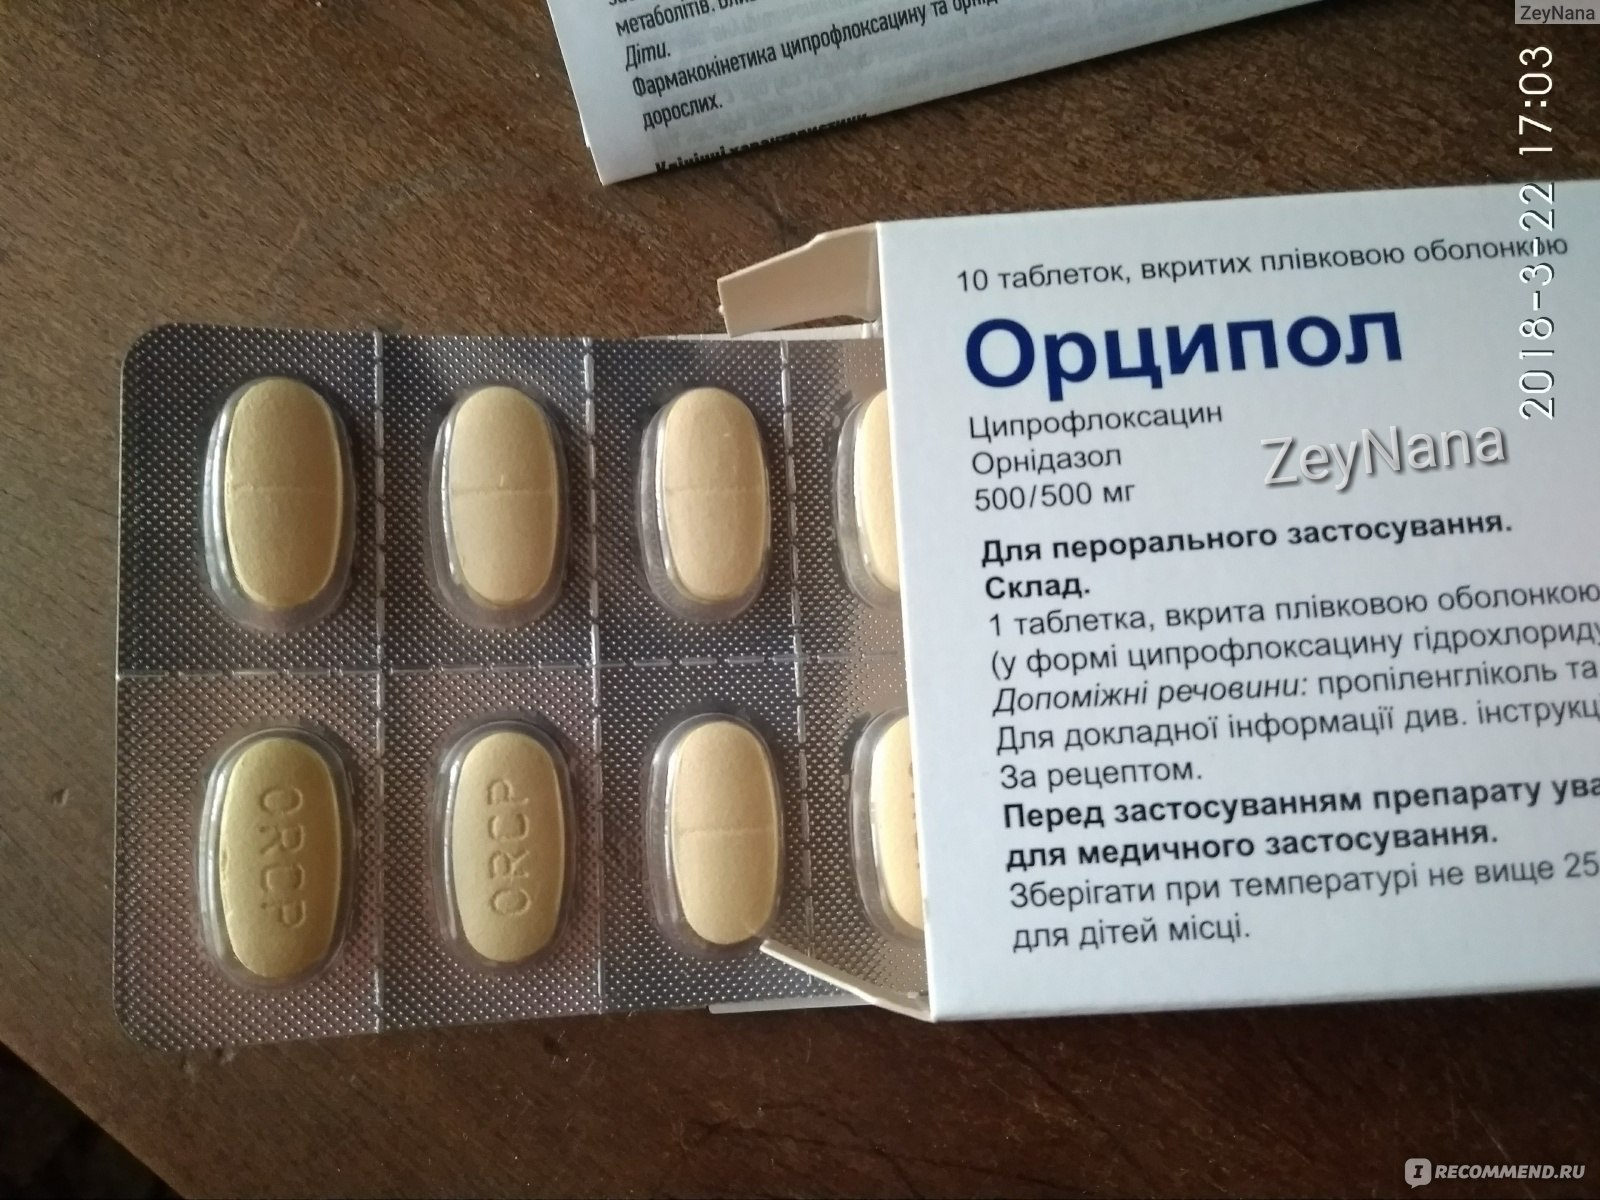 Орципол 500 мг инструкция по применению